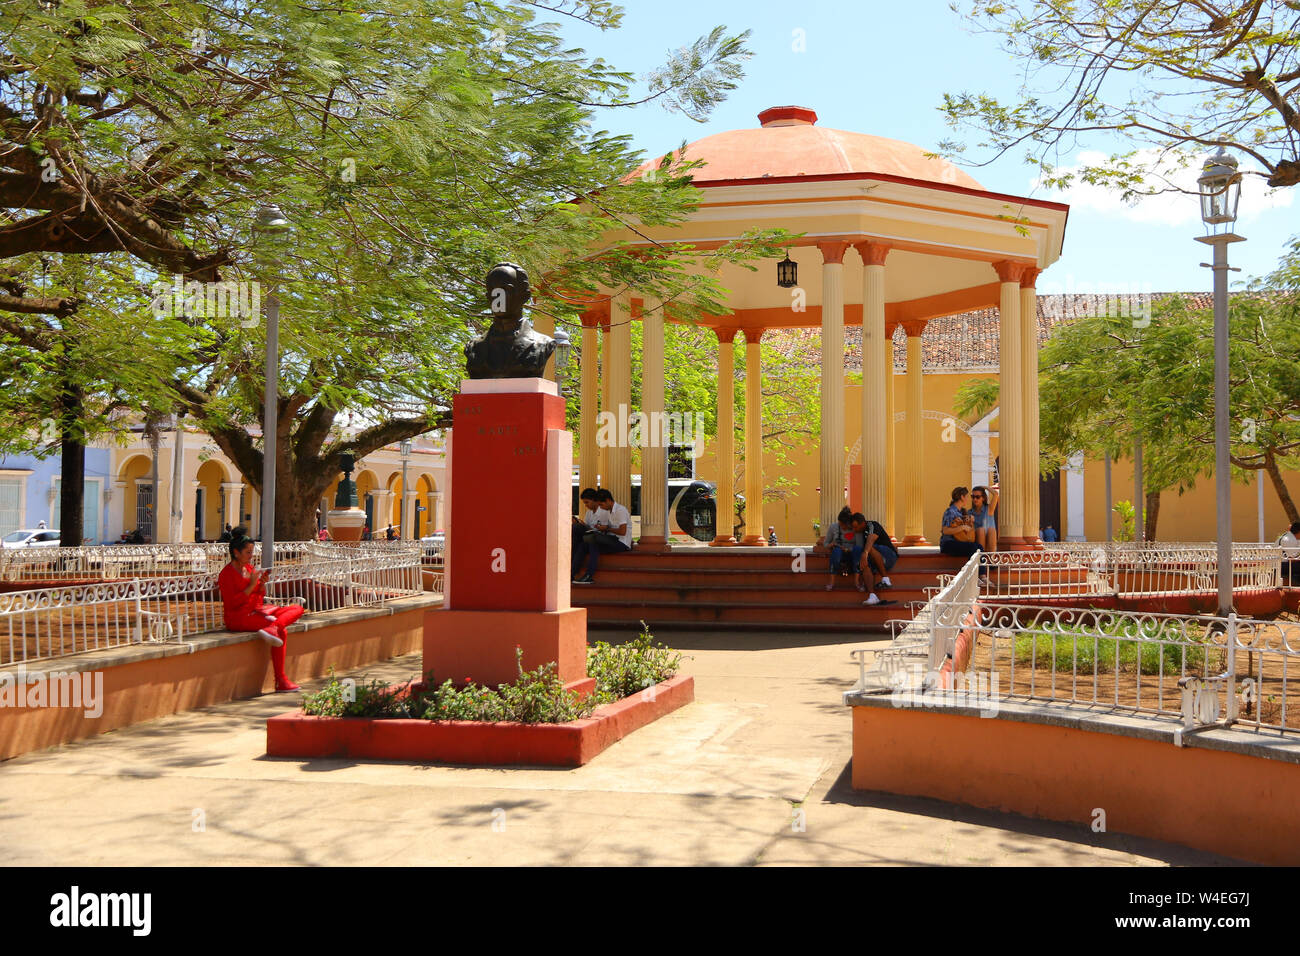 Plaza Marti in the center of Remedios in Cuba Stock Photo